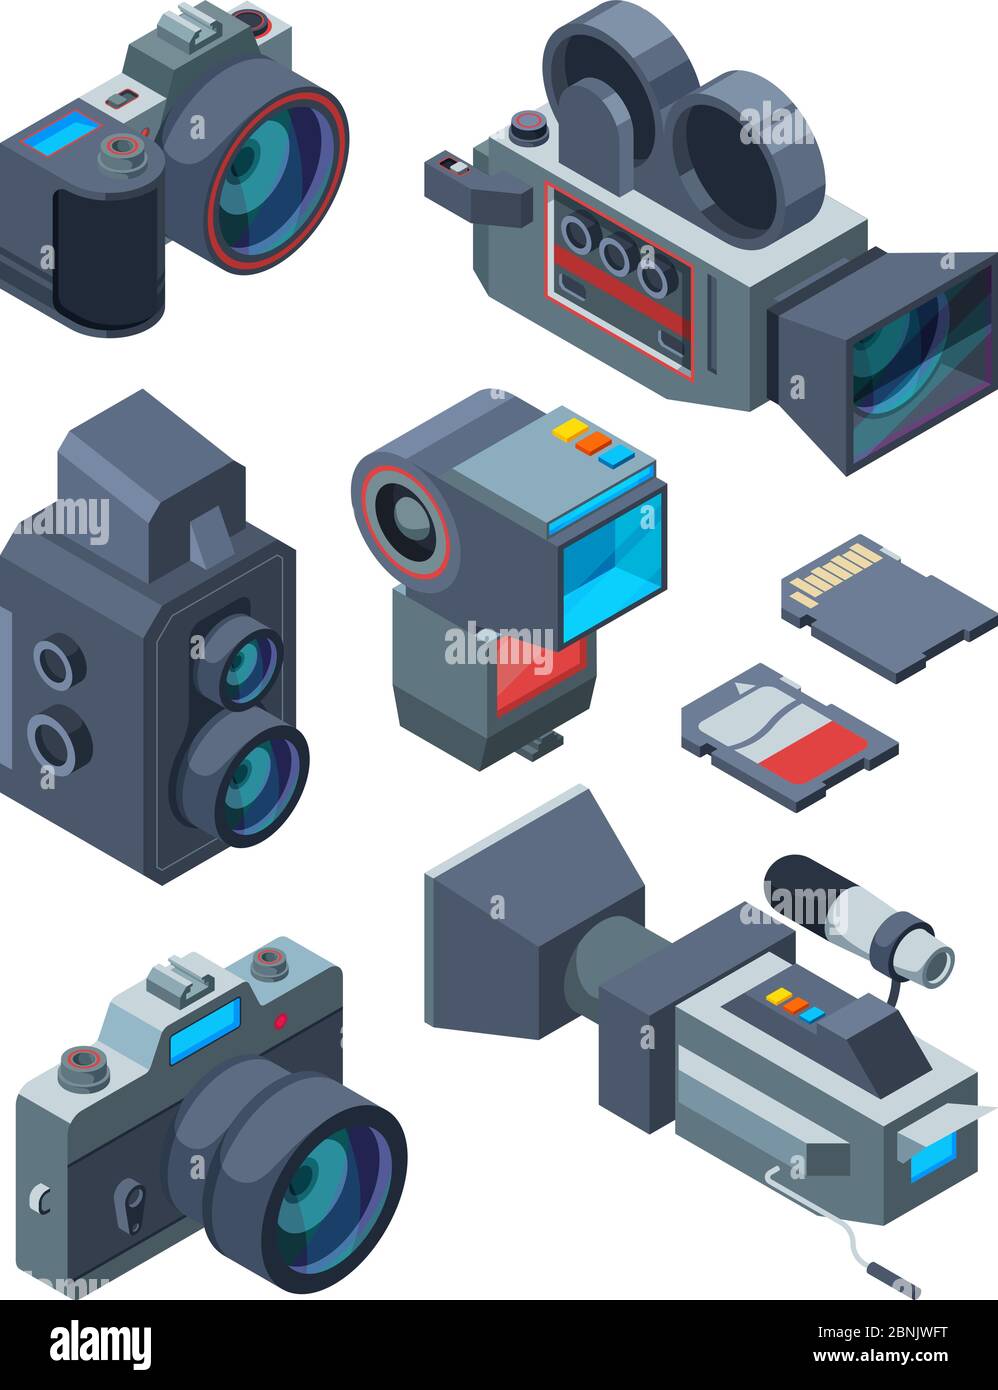 Isometrische Video- und Fotokameras. Vektorbilder verschiedener Geräte für Video- und Fotostudio Stock Vektor